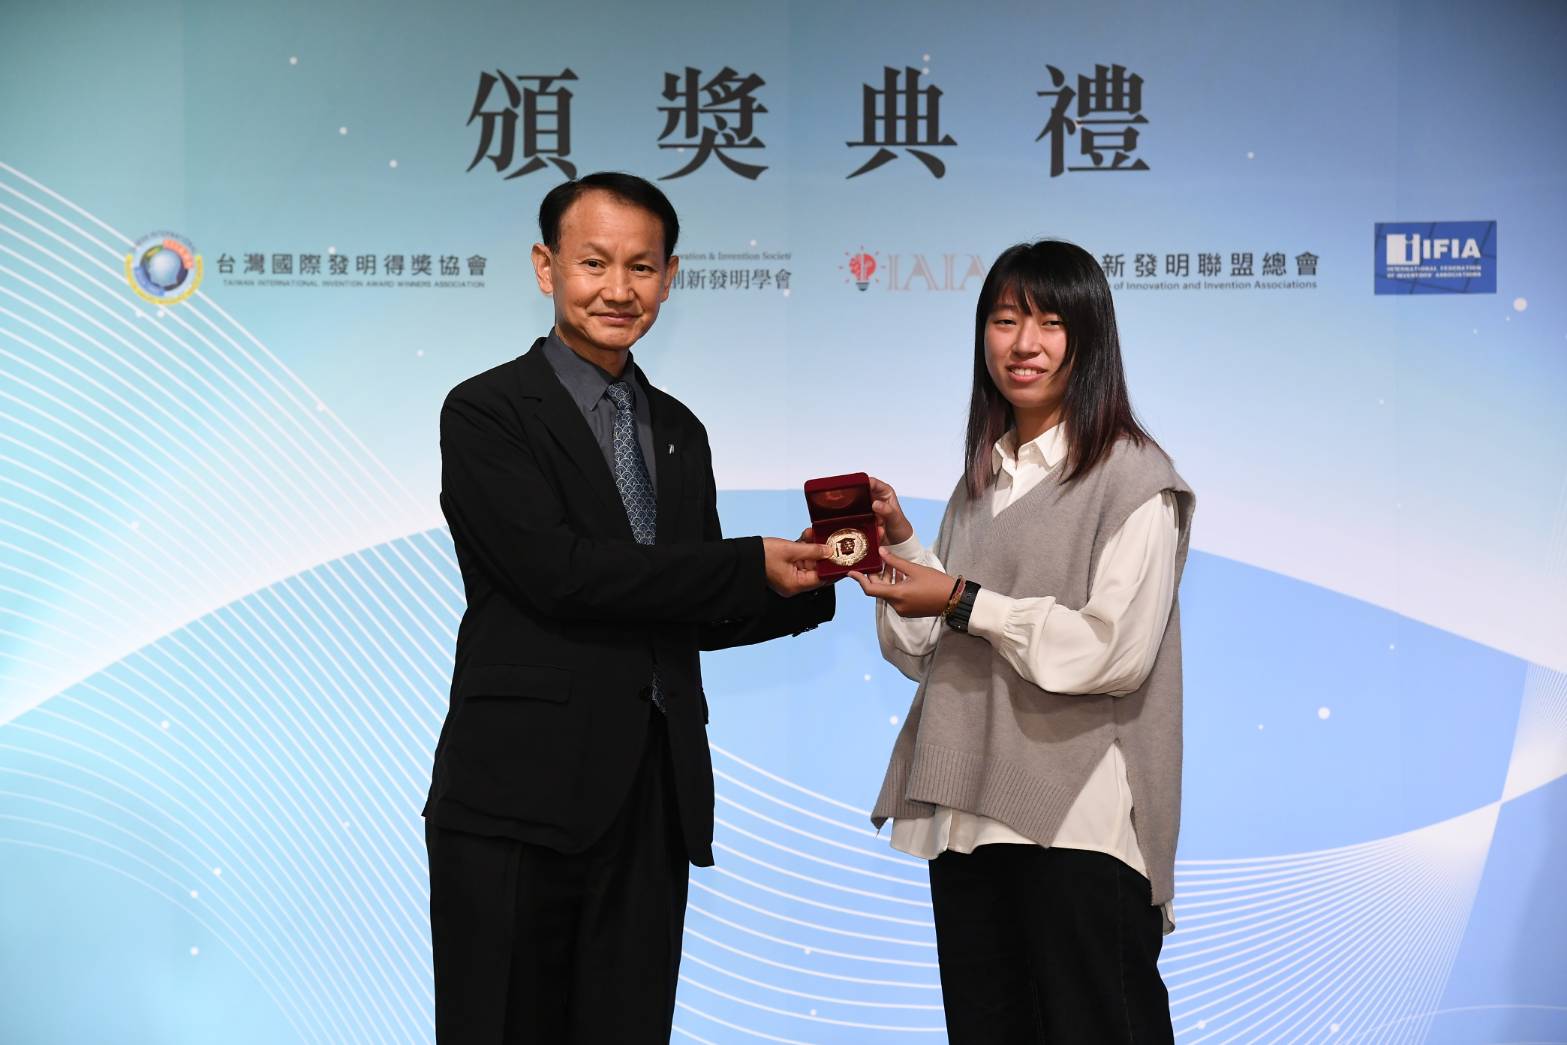 獲得金牌的「智慧植栽輔助系統」由鍾虹雯代表領獎